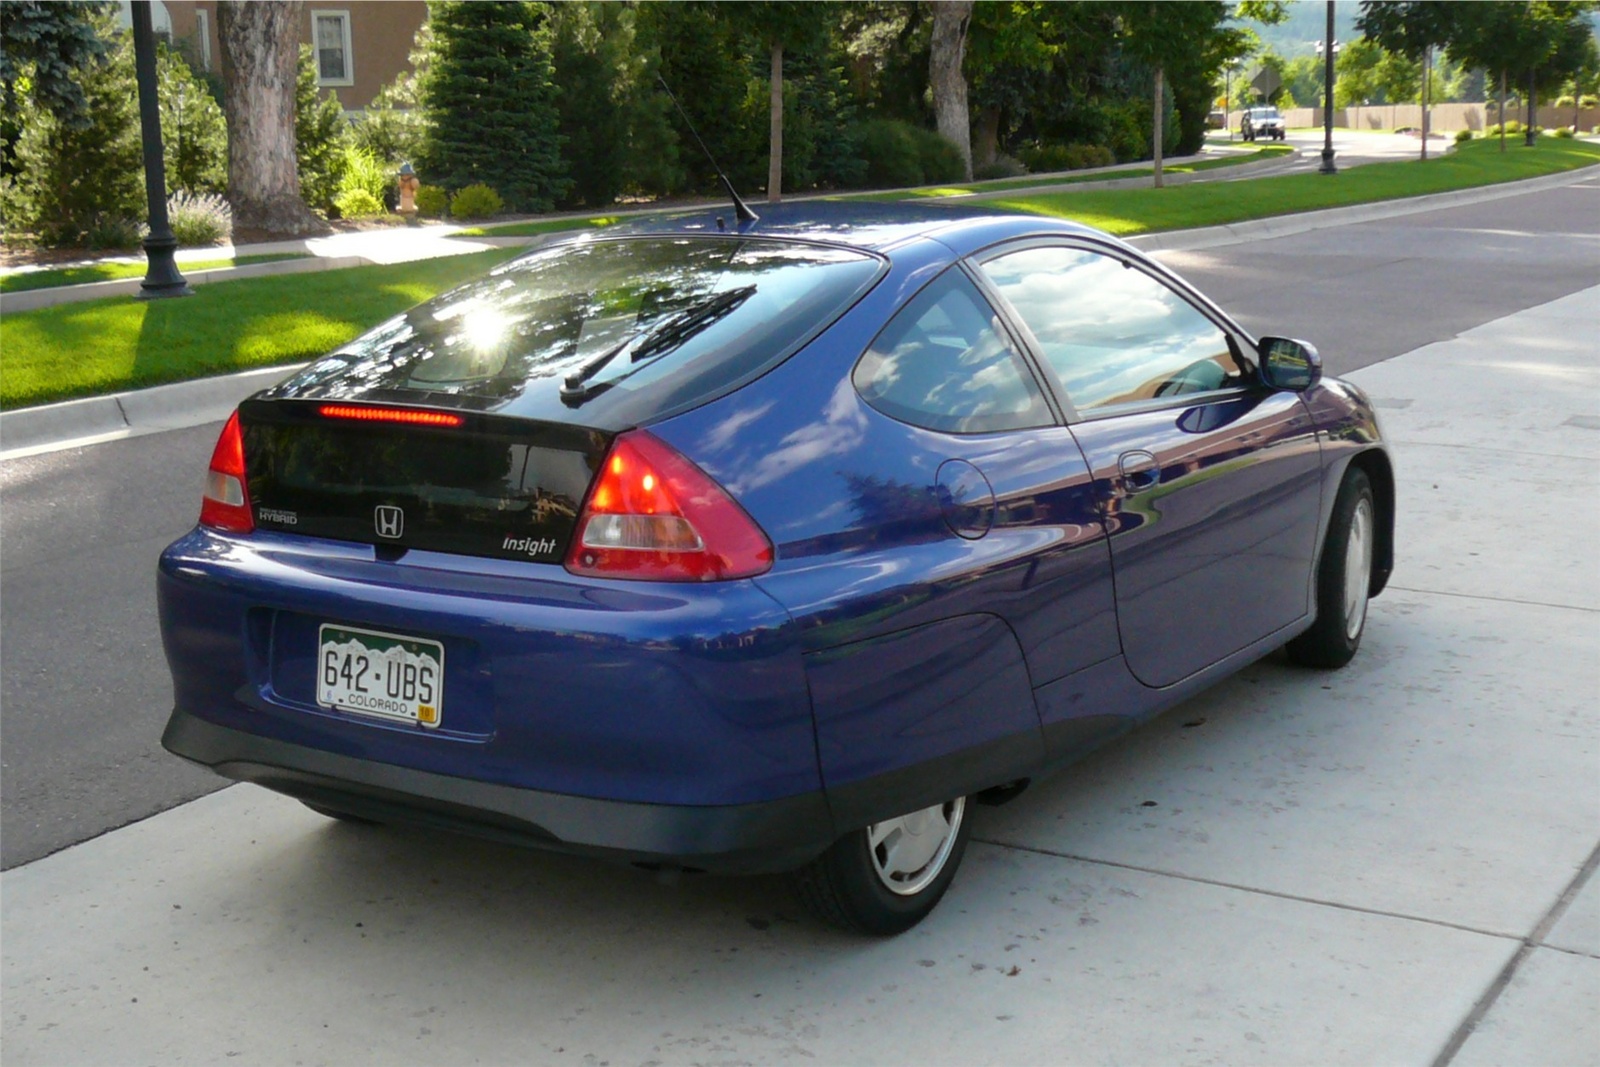 2003 Honda insight reliability #4